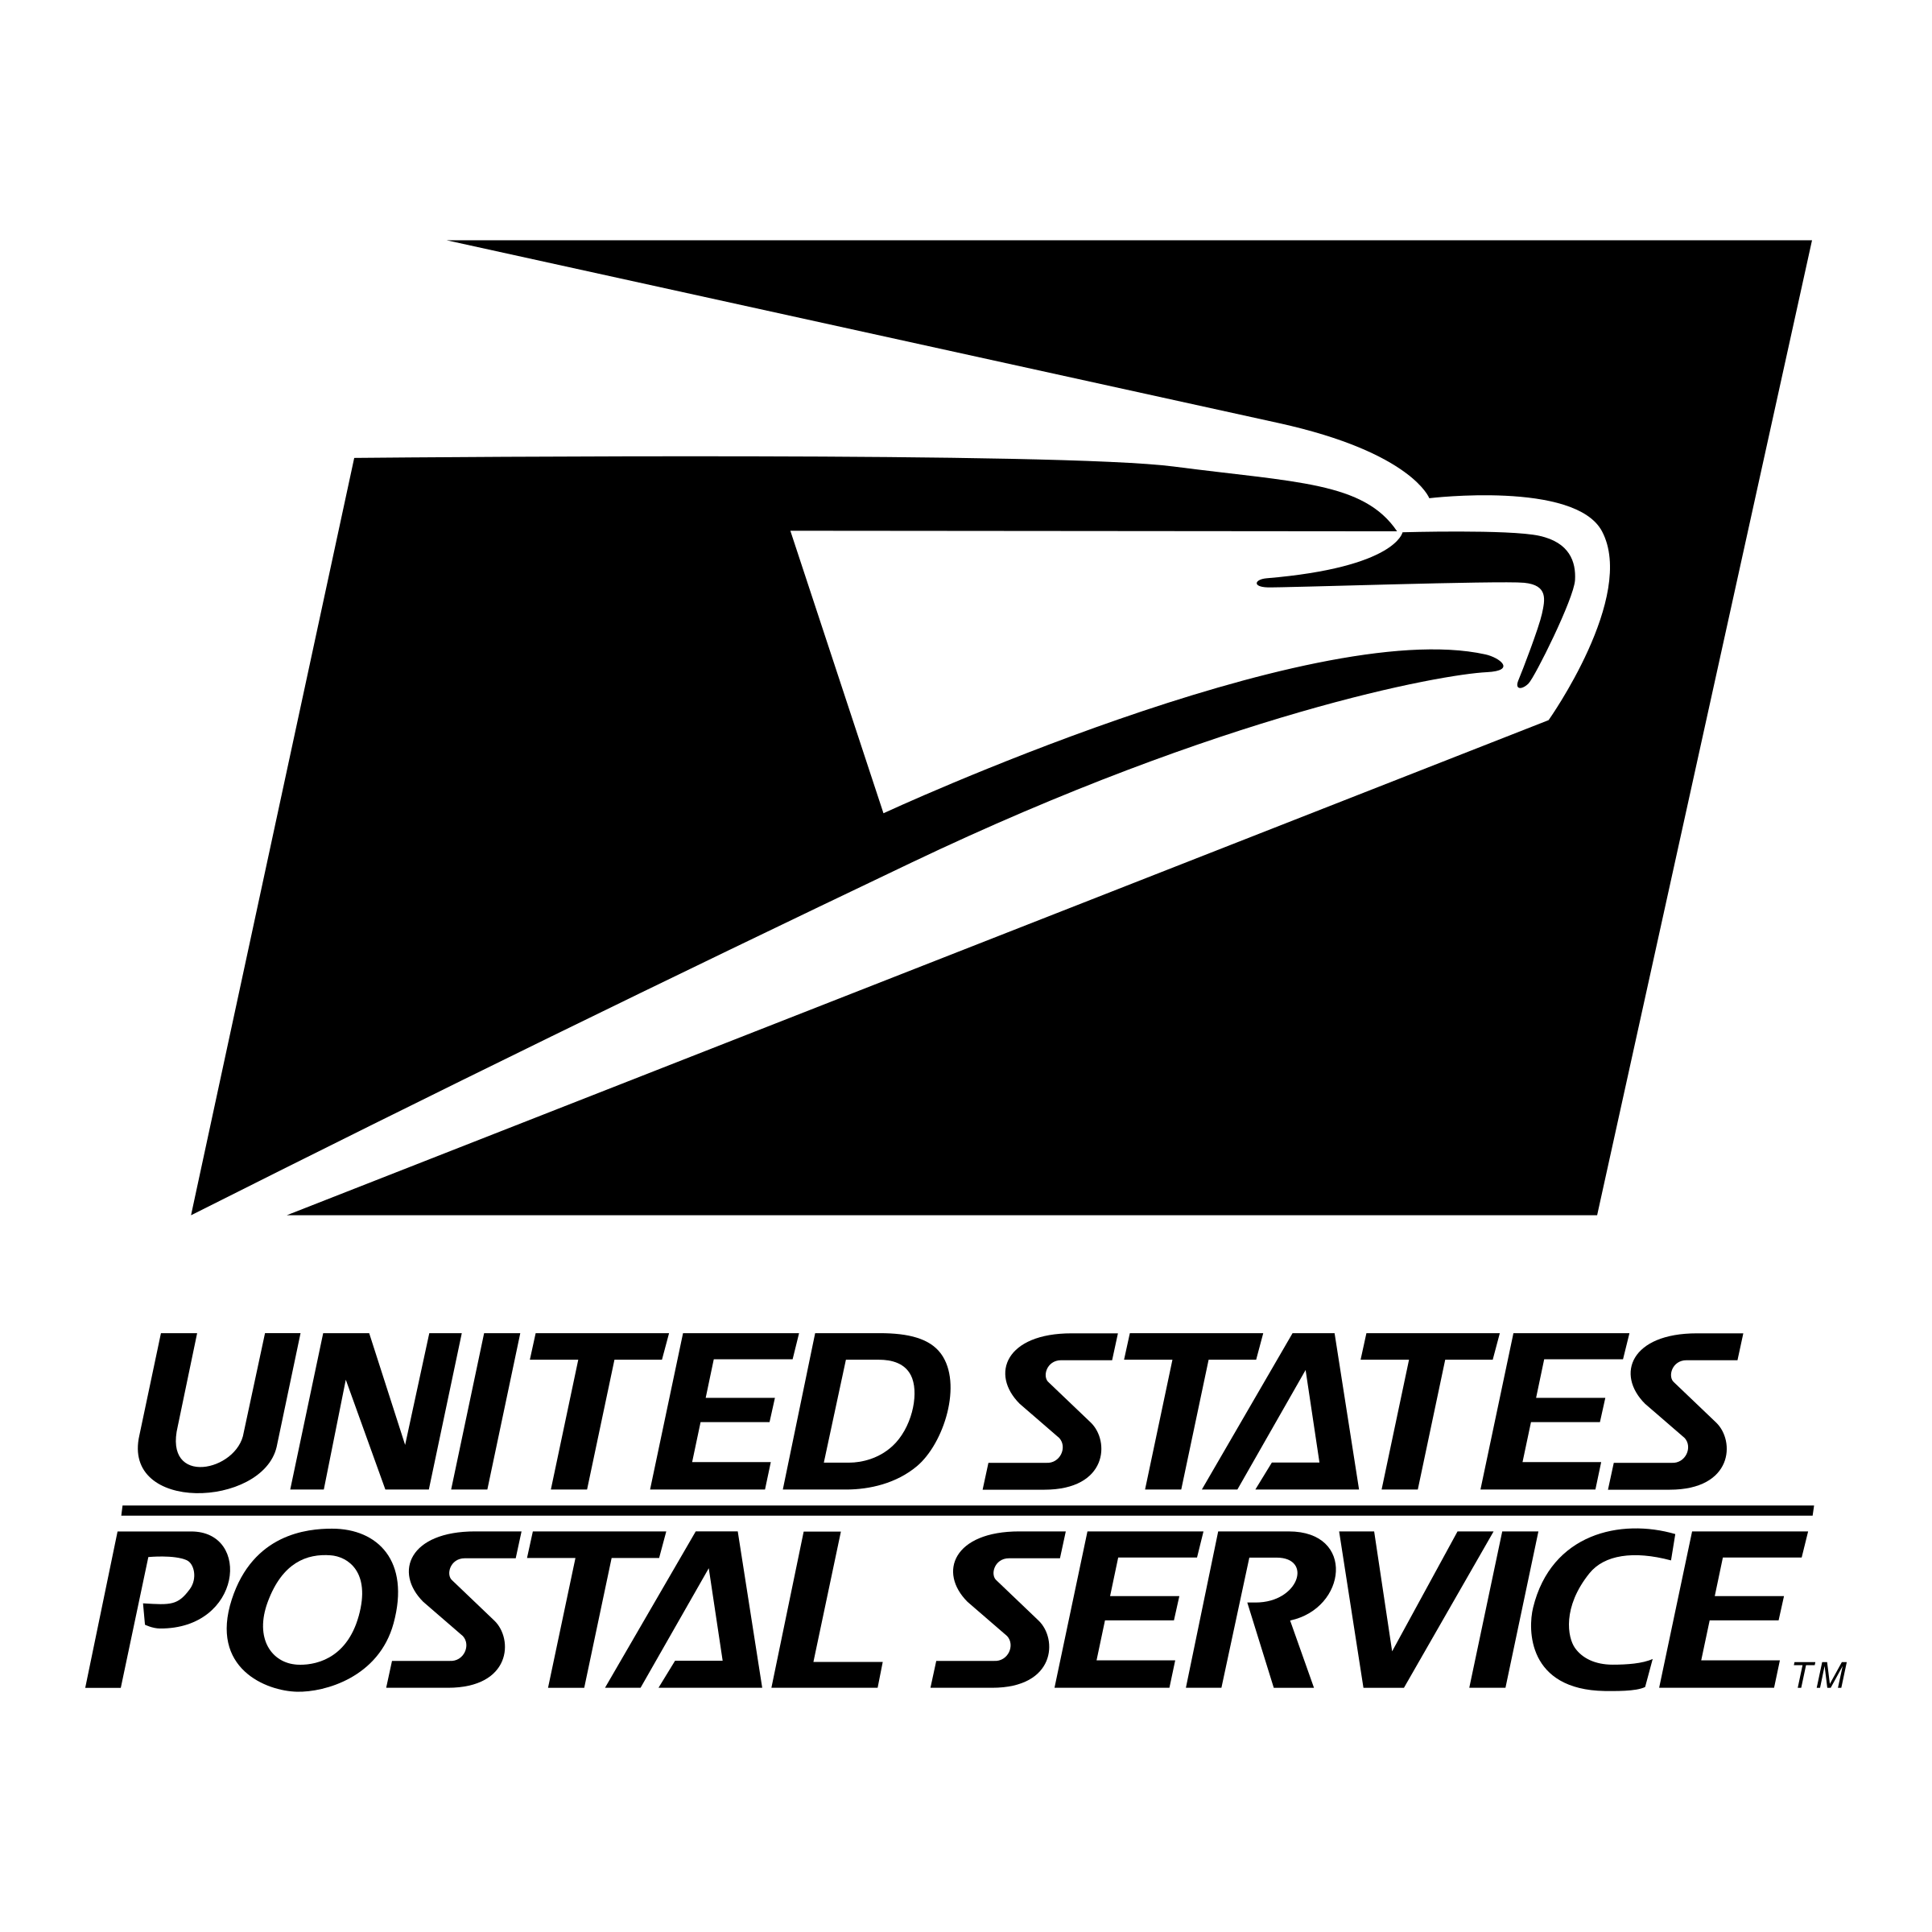 Postal Logo - United States Postal Service Logo PNG Transparent & SVG Vector